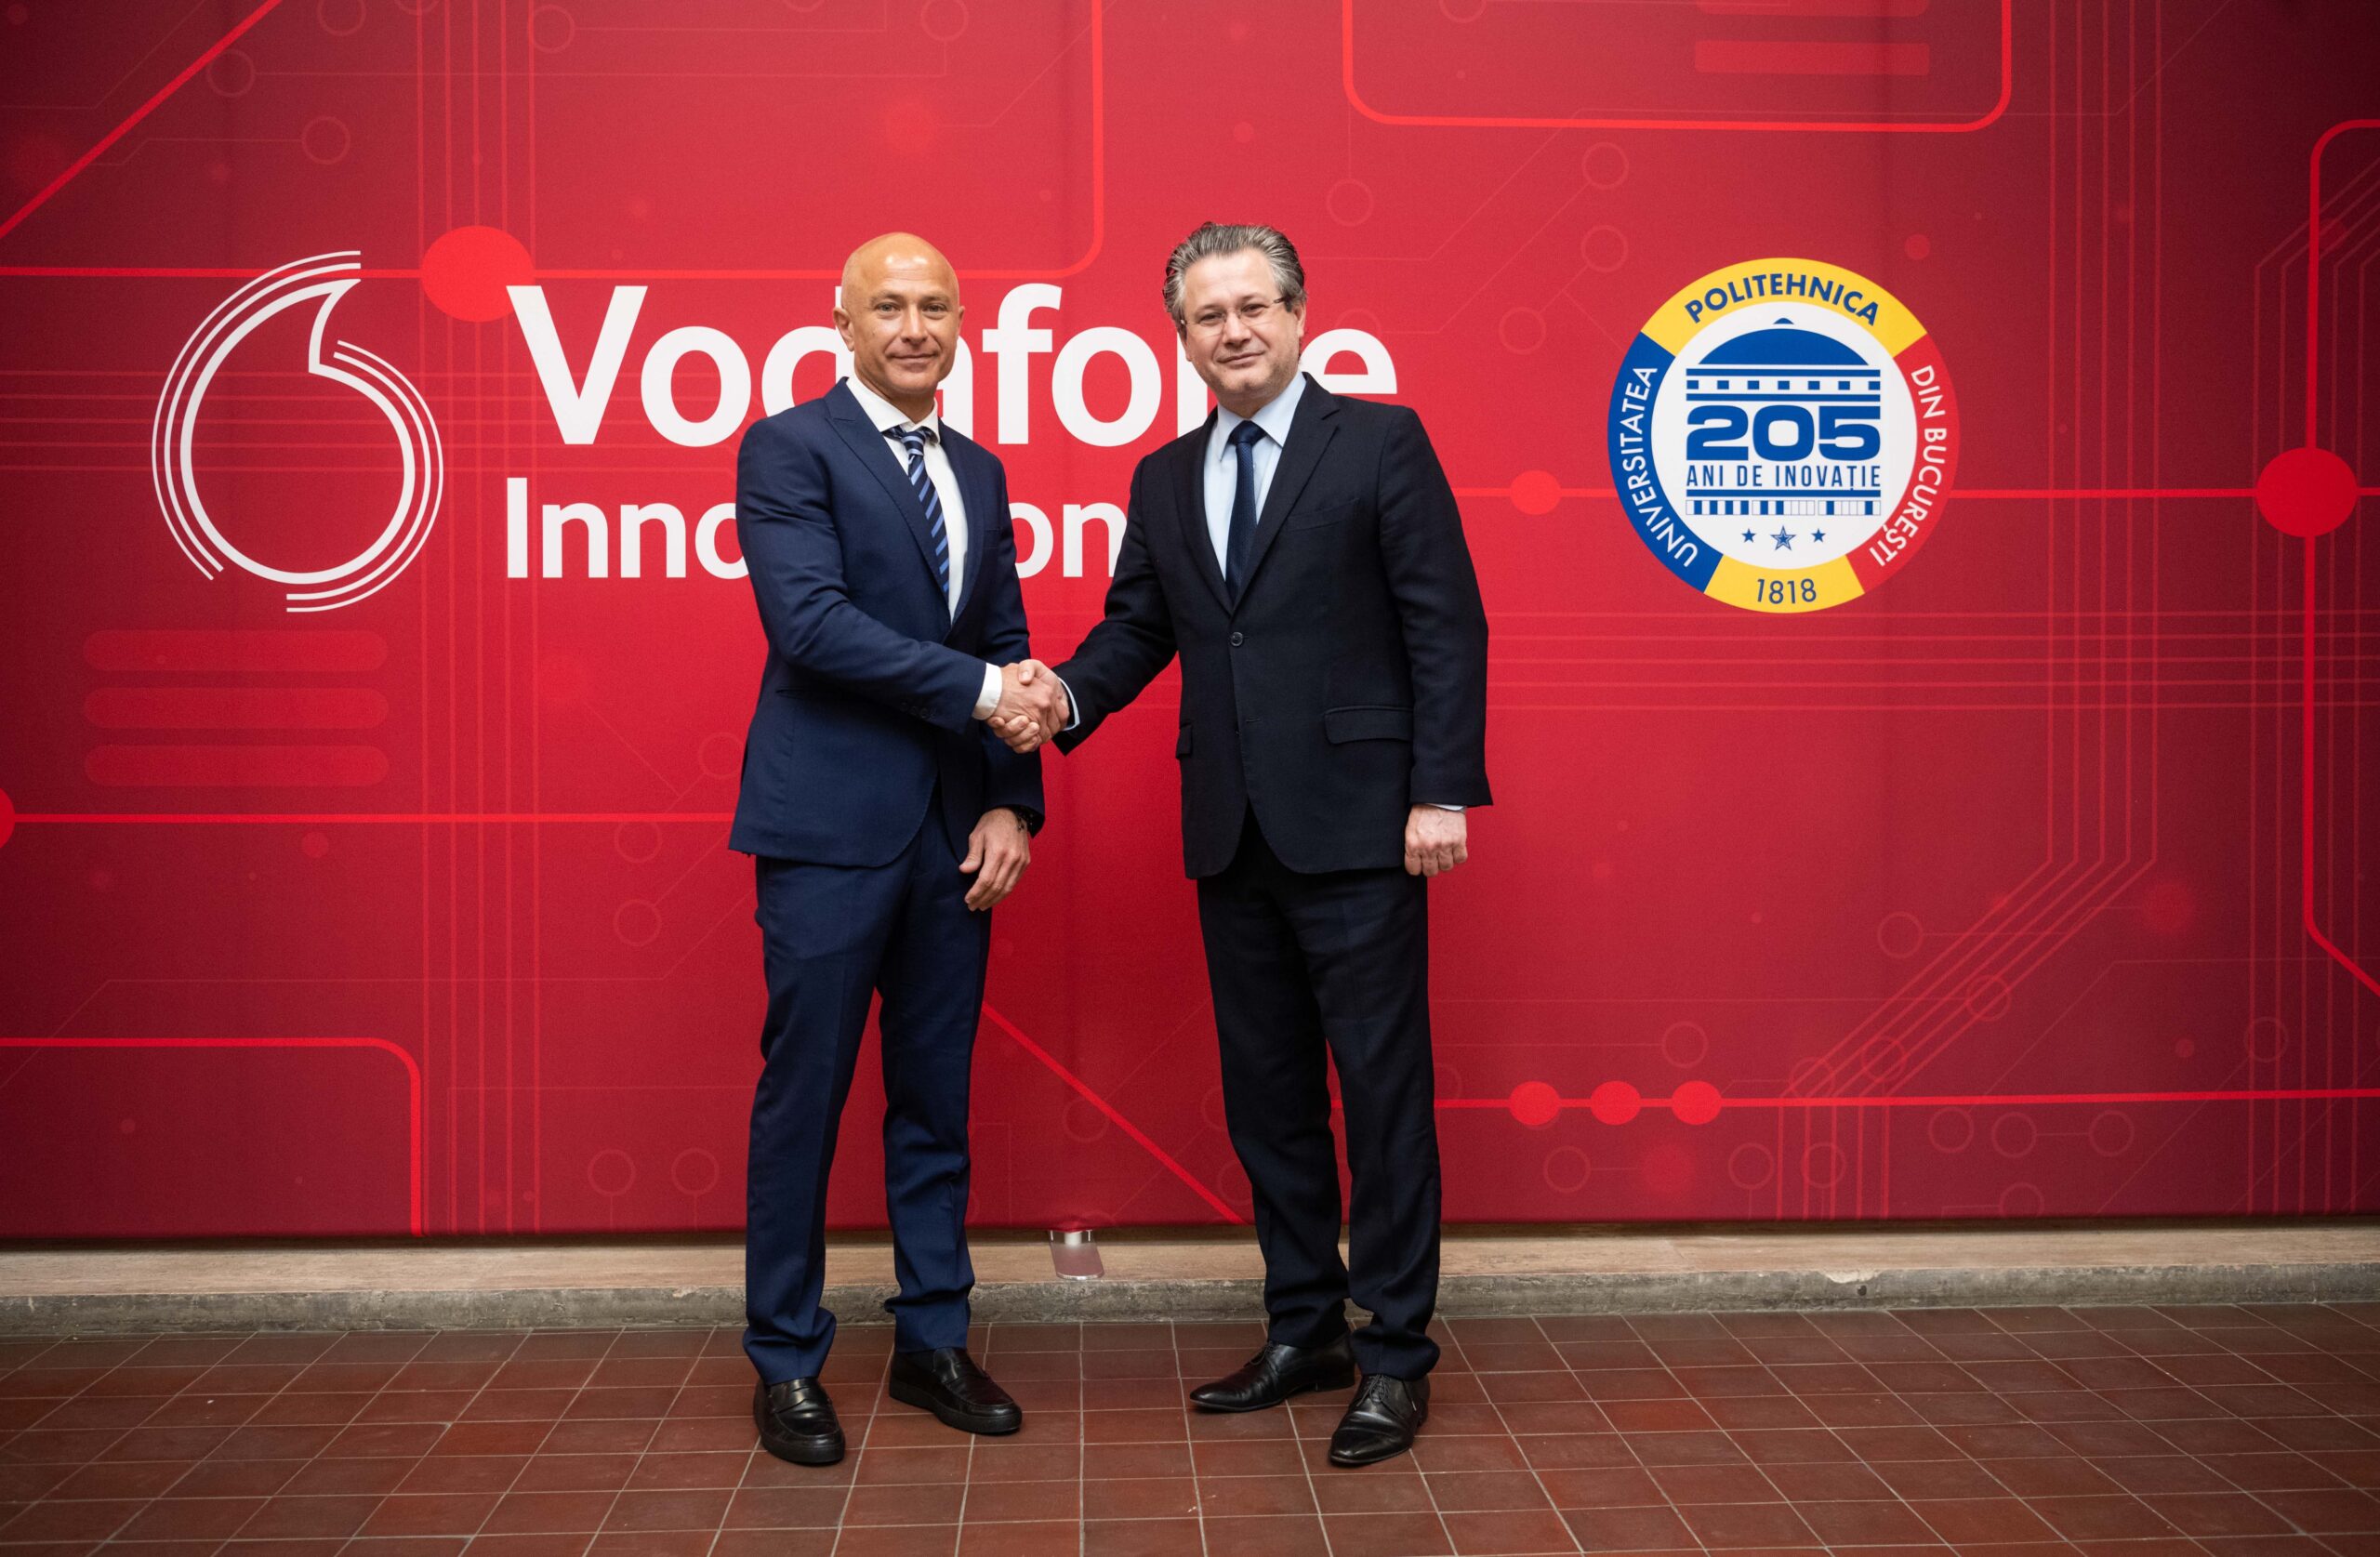 Vodafone Innovation Hub – primul centru de excelență pentru cercetare și dezvoltare digitală în cadrul  Universității Politehnica din București